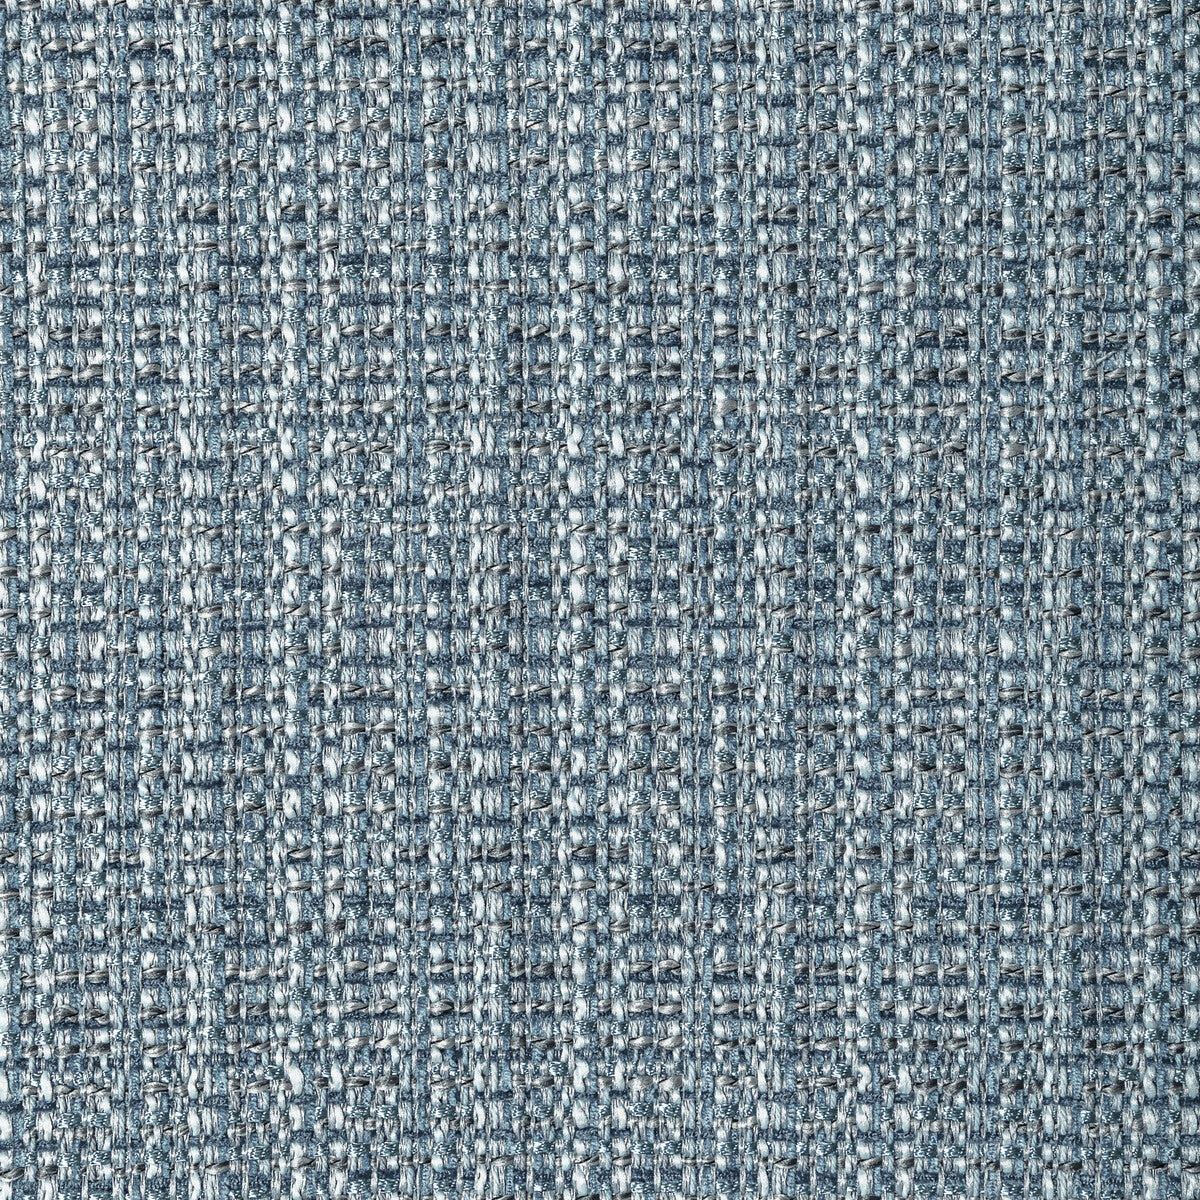 Kravet Design fabric in 34210-5 color - pattern 34210.5.0 - by Kravet Design